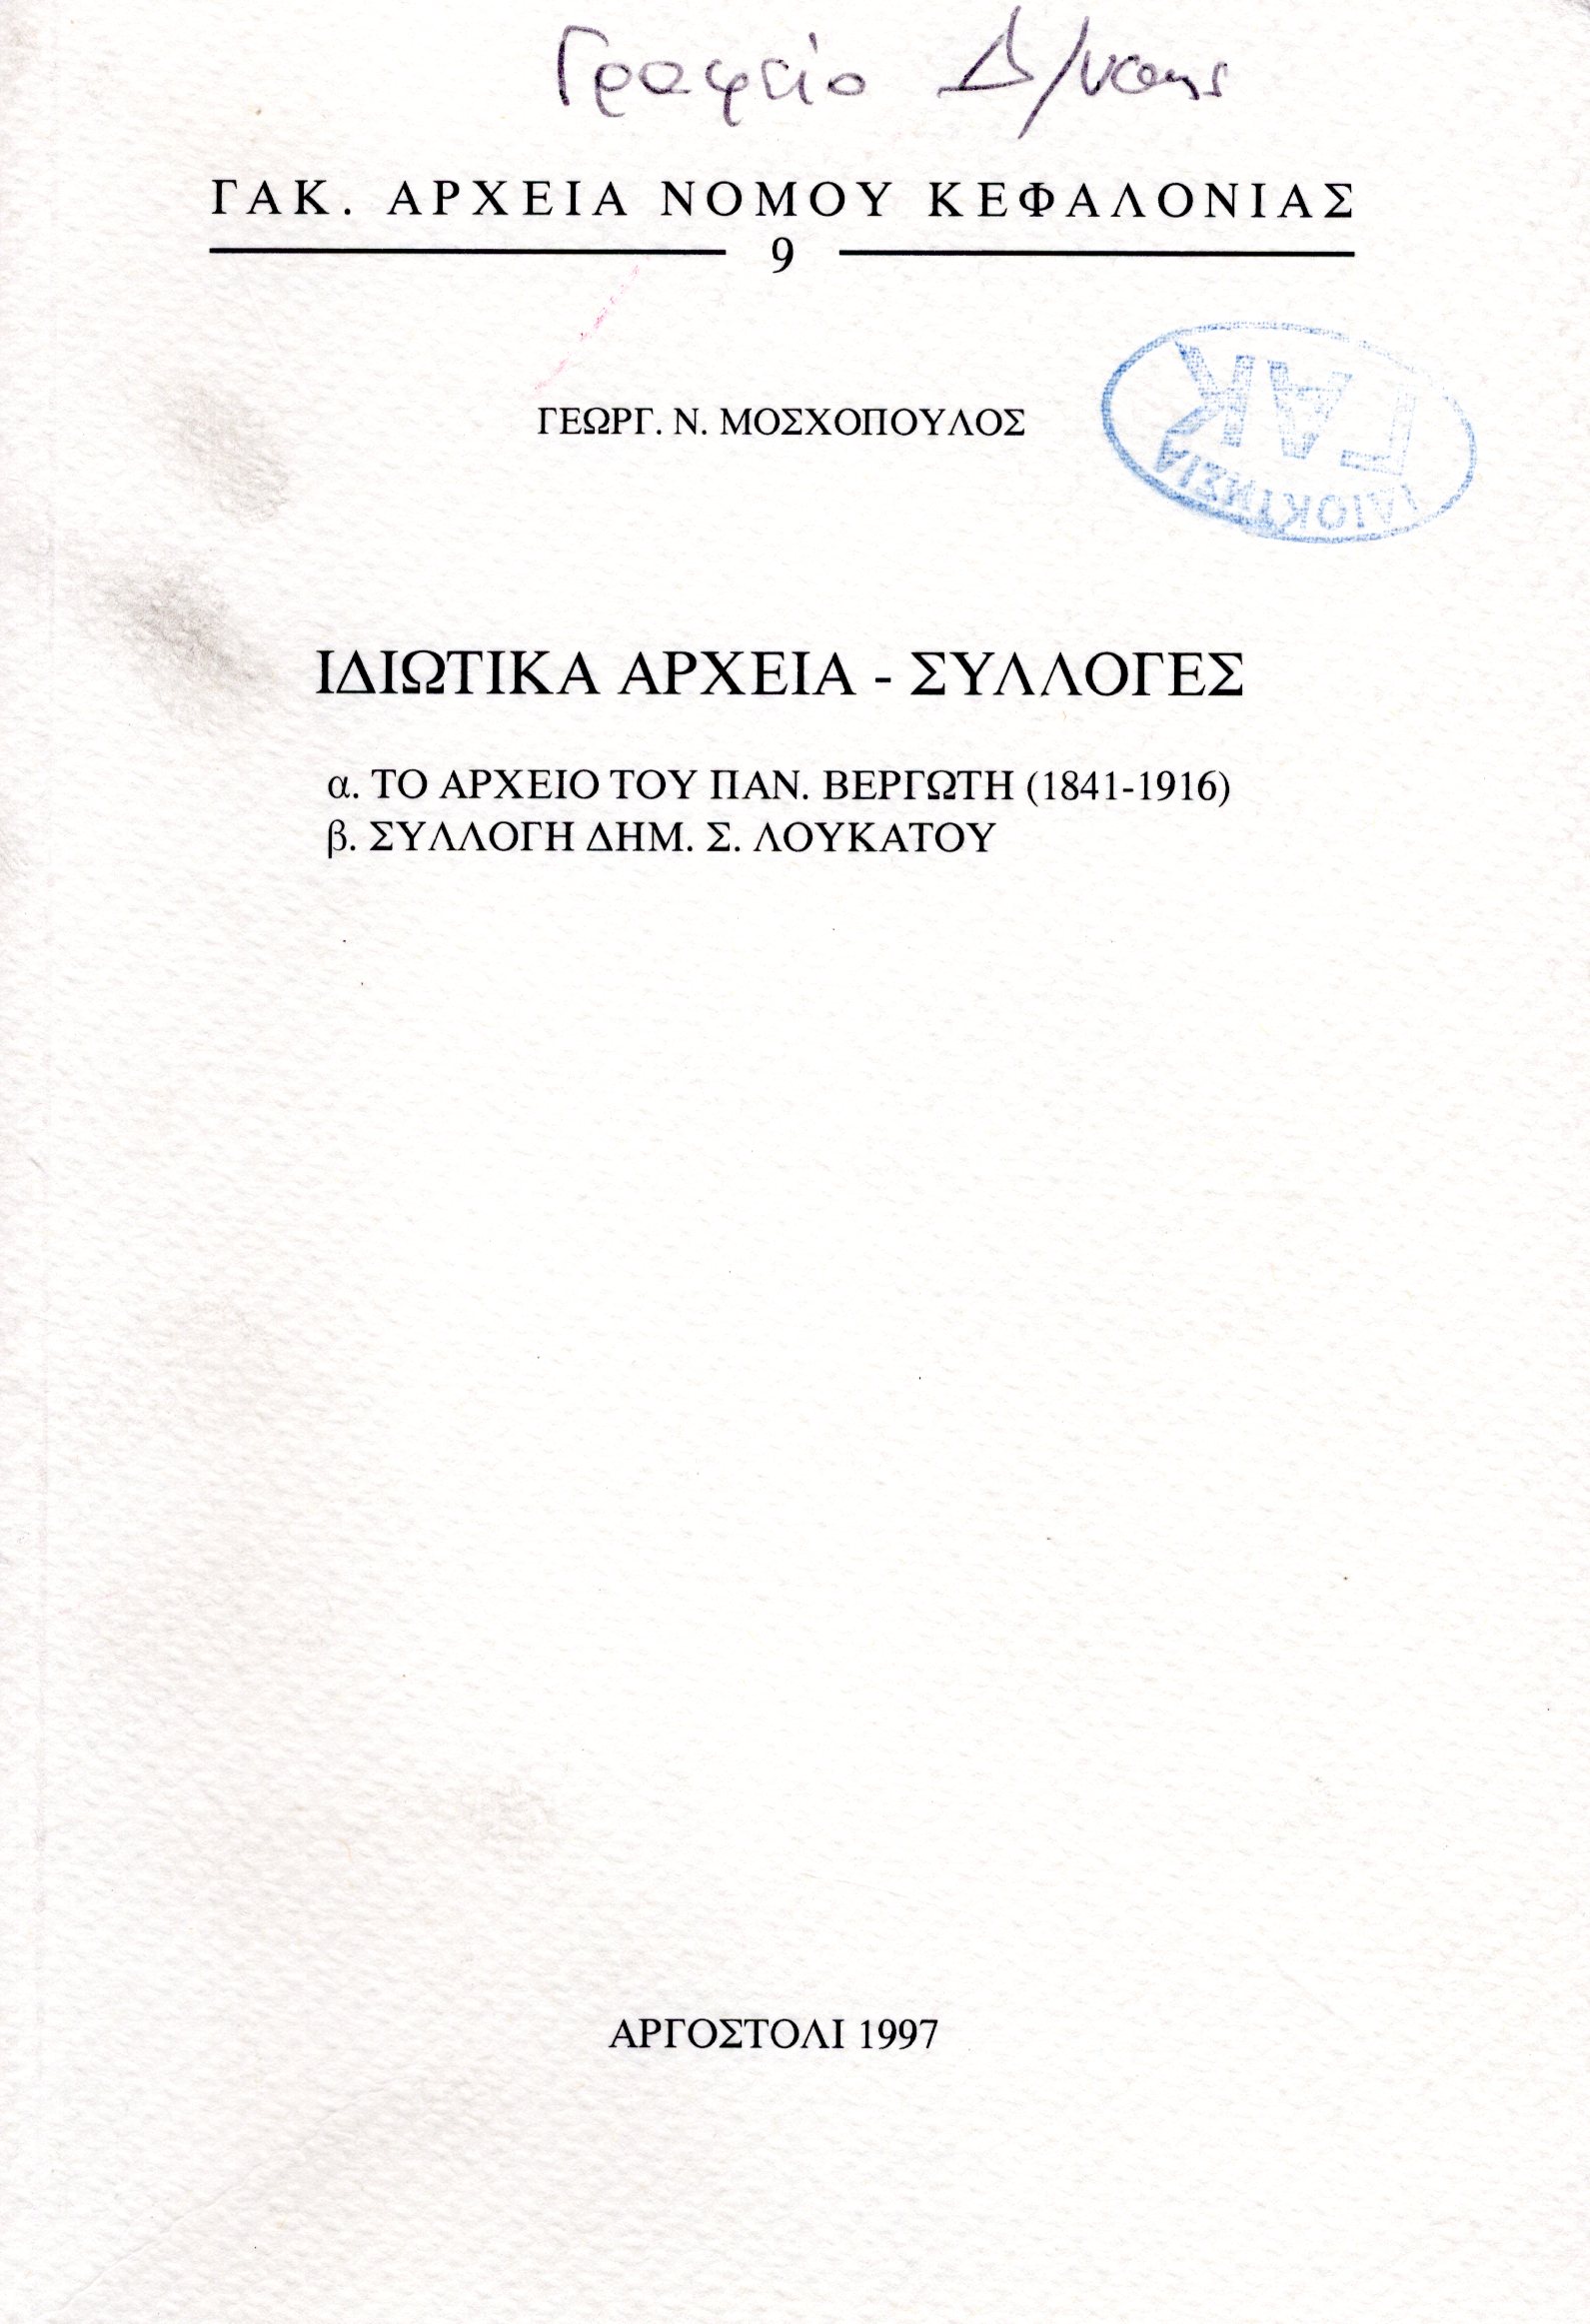 Εξώφυλλο από ΙΔΙΩΤΙΚΑ ΑΡΧΕΙΑ-ΣΥΛΛΟΓΕΣ